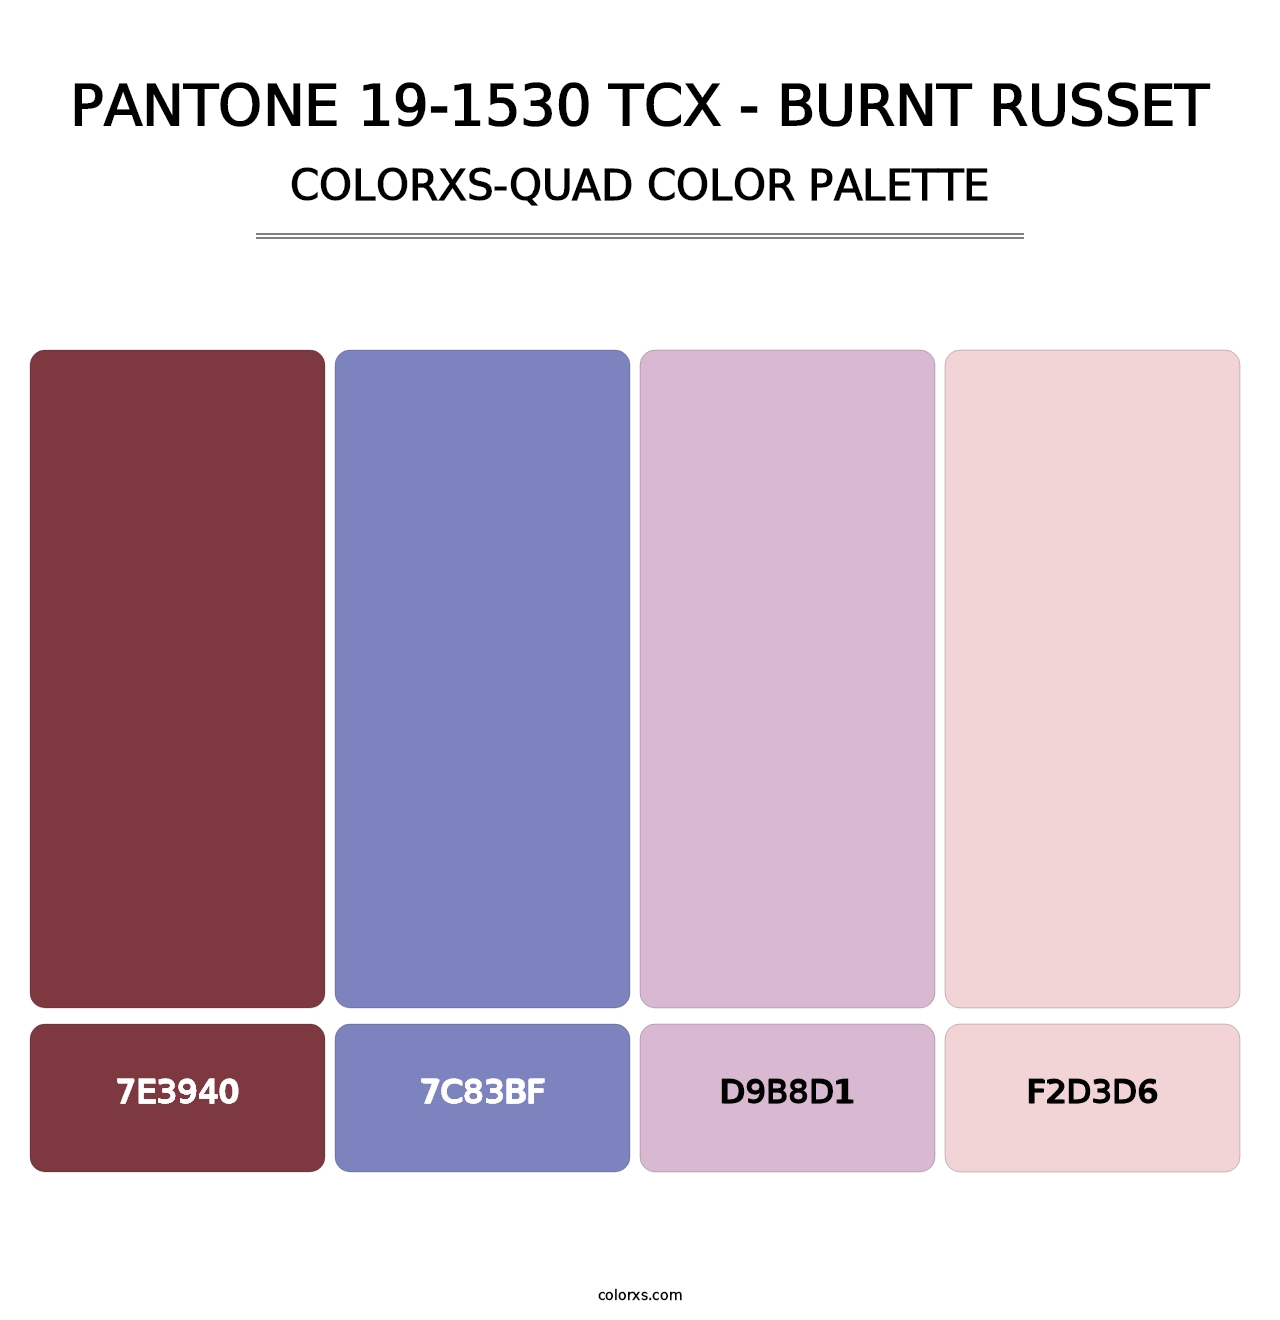 PANTONE 19-1530 TCX - Burnt Russet - Colorxs Quad Palette